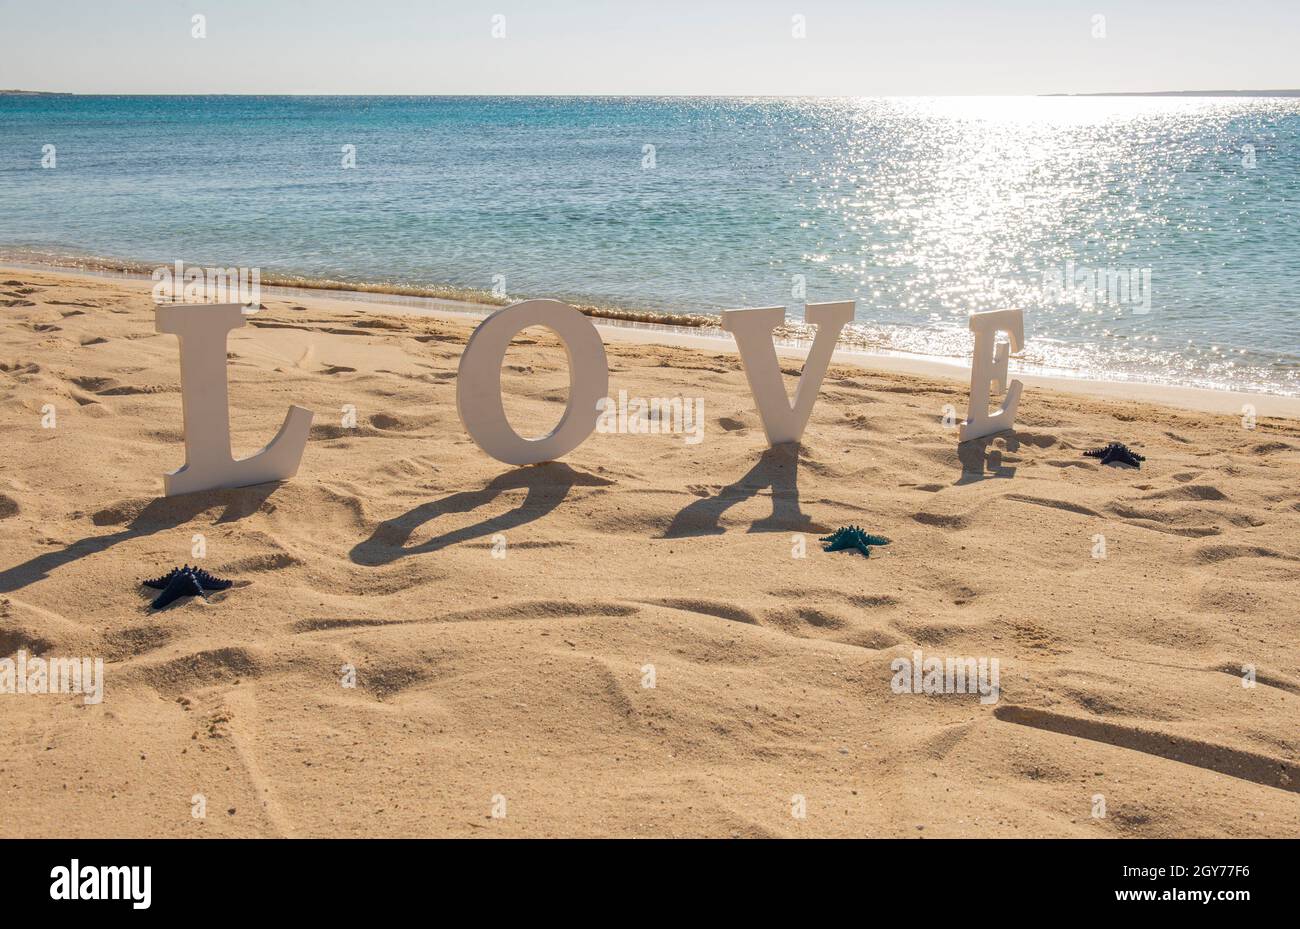 Gros plan du signe romantique de l'amour sur une plage de sable de l'île tropicale paradis avec l'océan en arrière-plan Banque D'Images